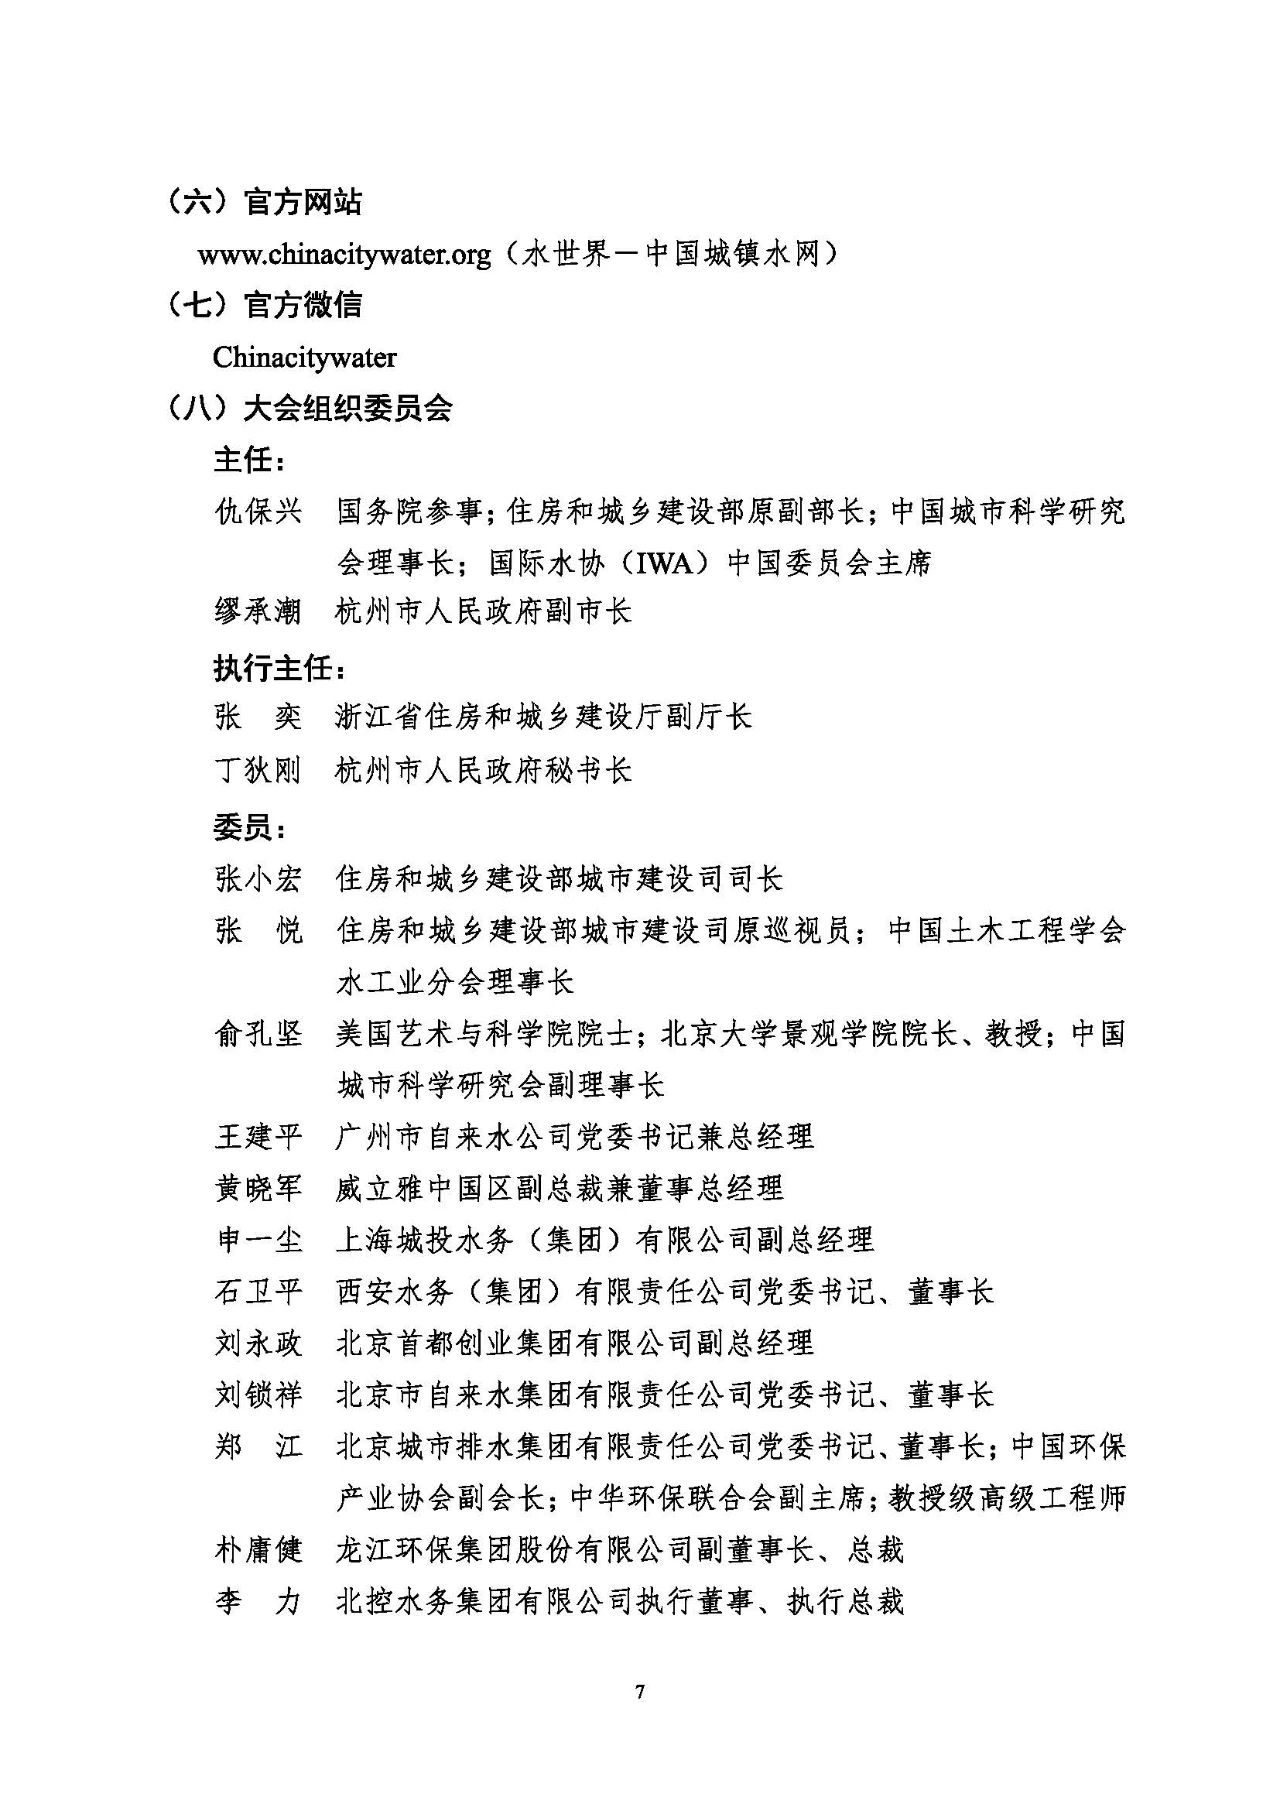 第十五届中国城镇水务大会与博览会将在杭州召开！(图7)